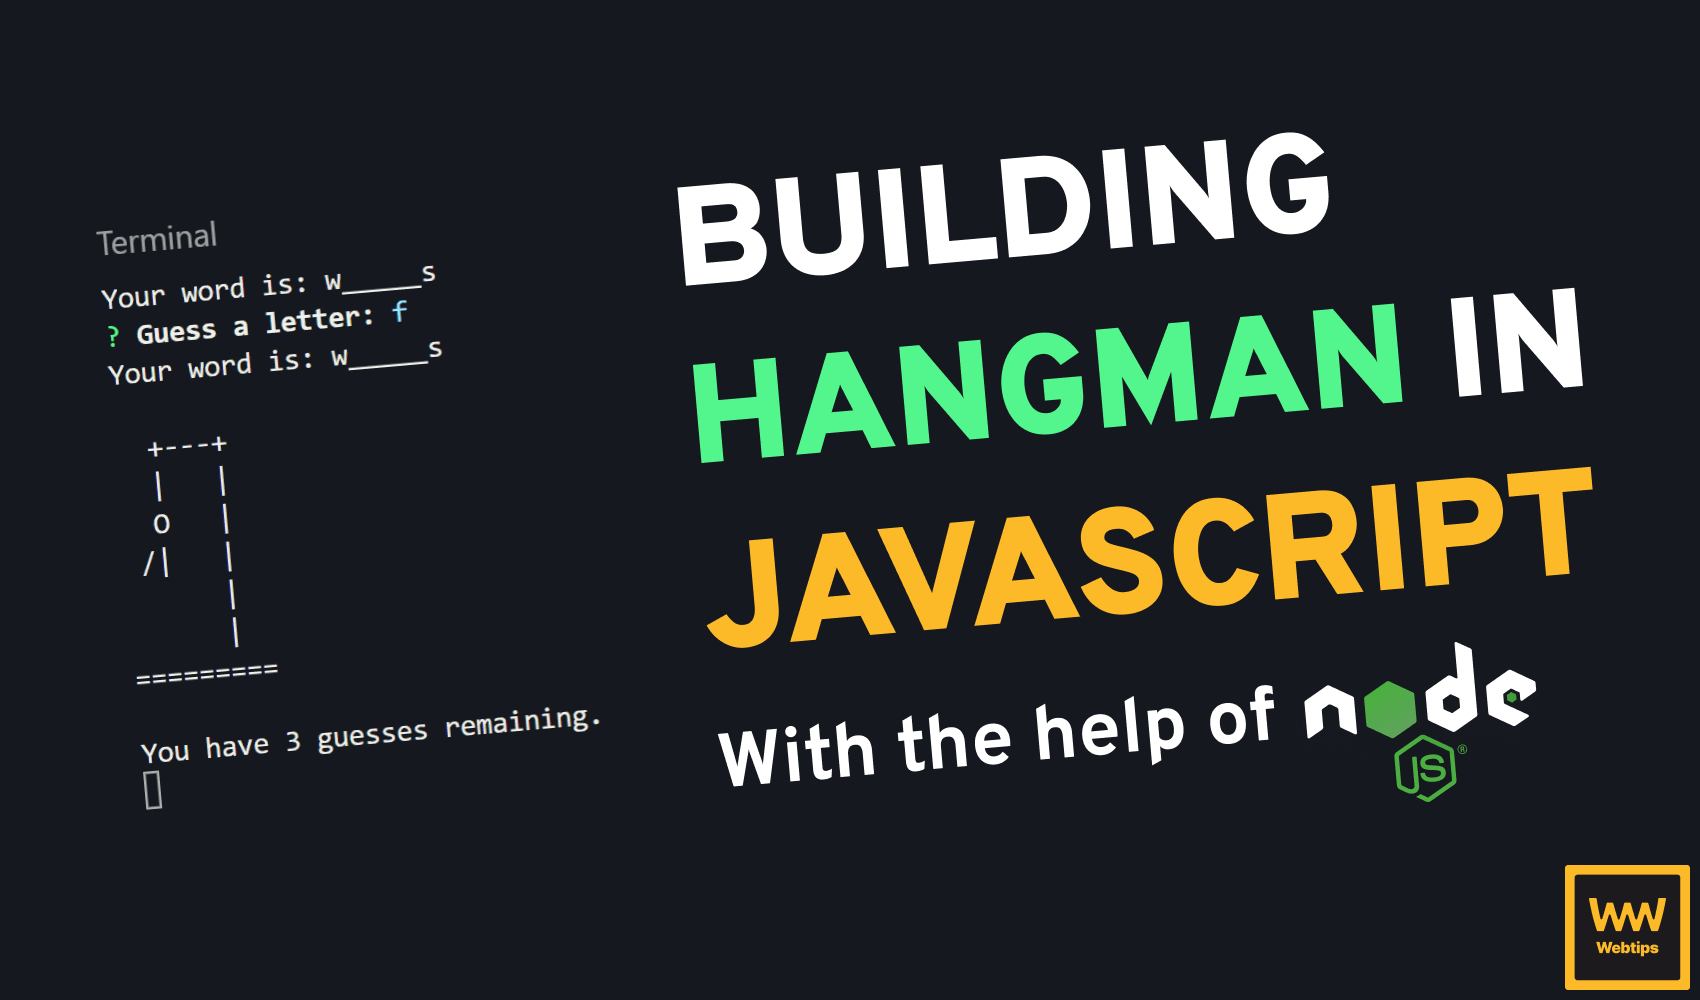 How to Build Hangman in JavaScript